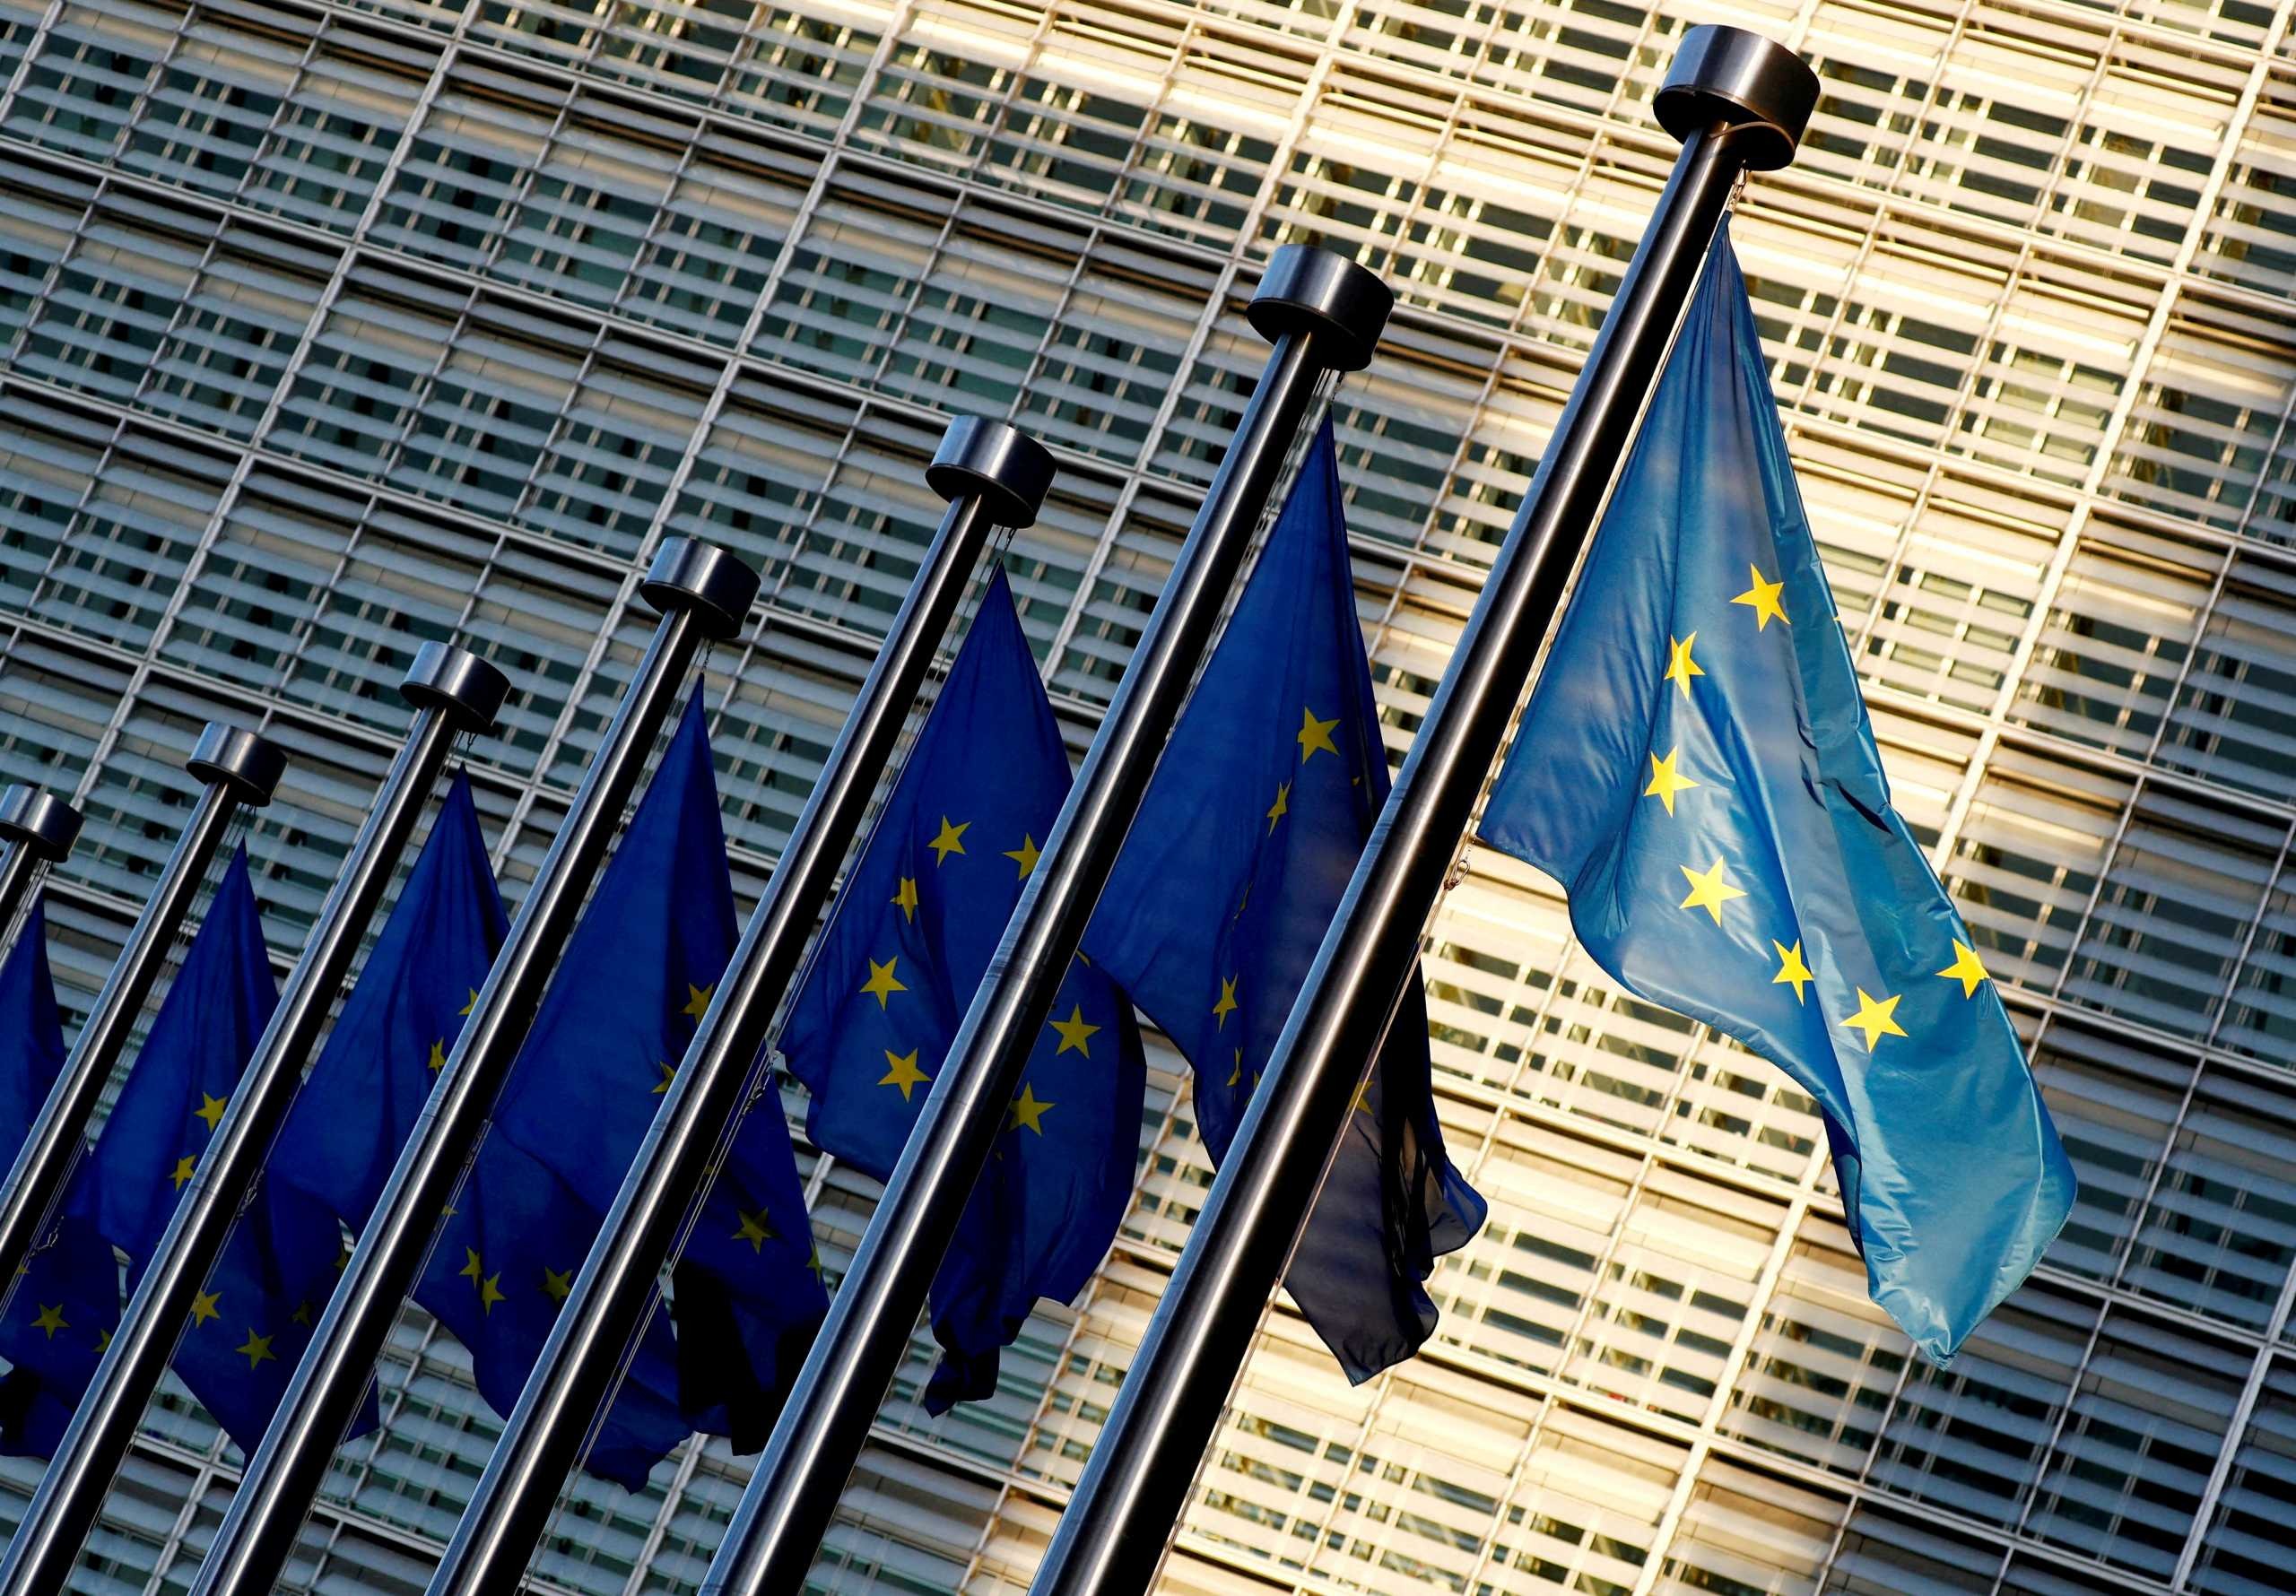 Σύμφωνο σταθερότητας ΕΕ: Η Γαλλία απαιτεί μεγαλύτερη ευελιξία στην μείωση του ελλείματος